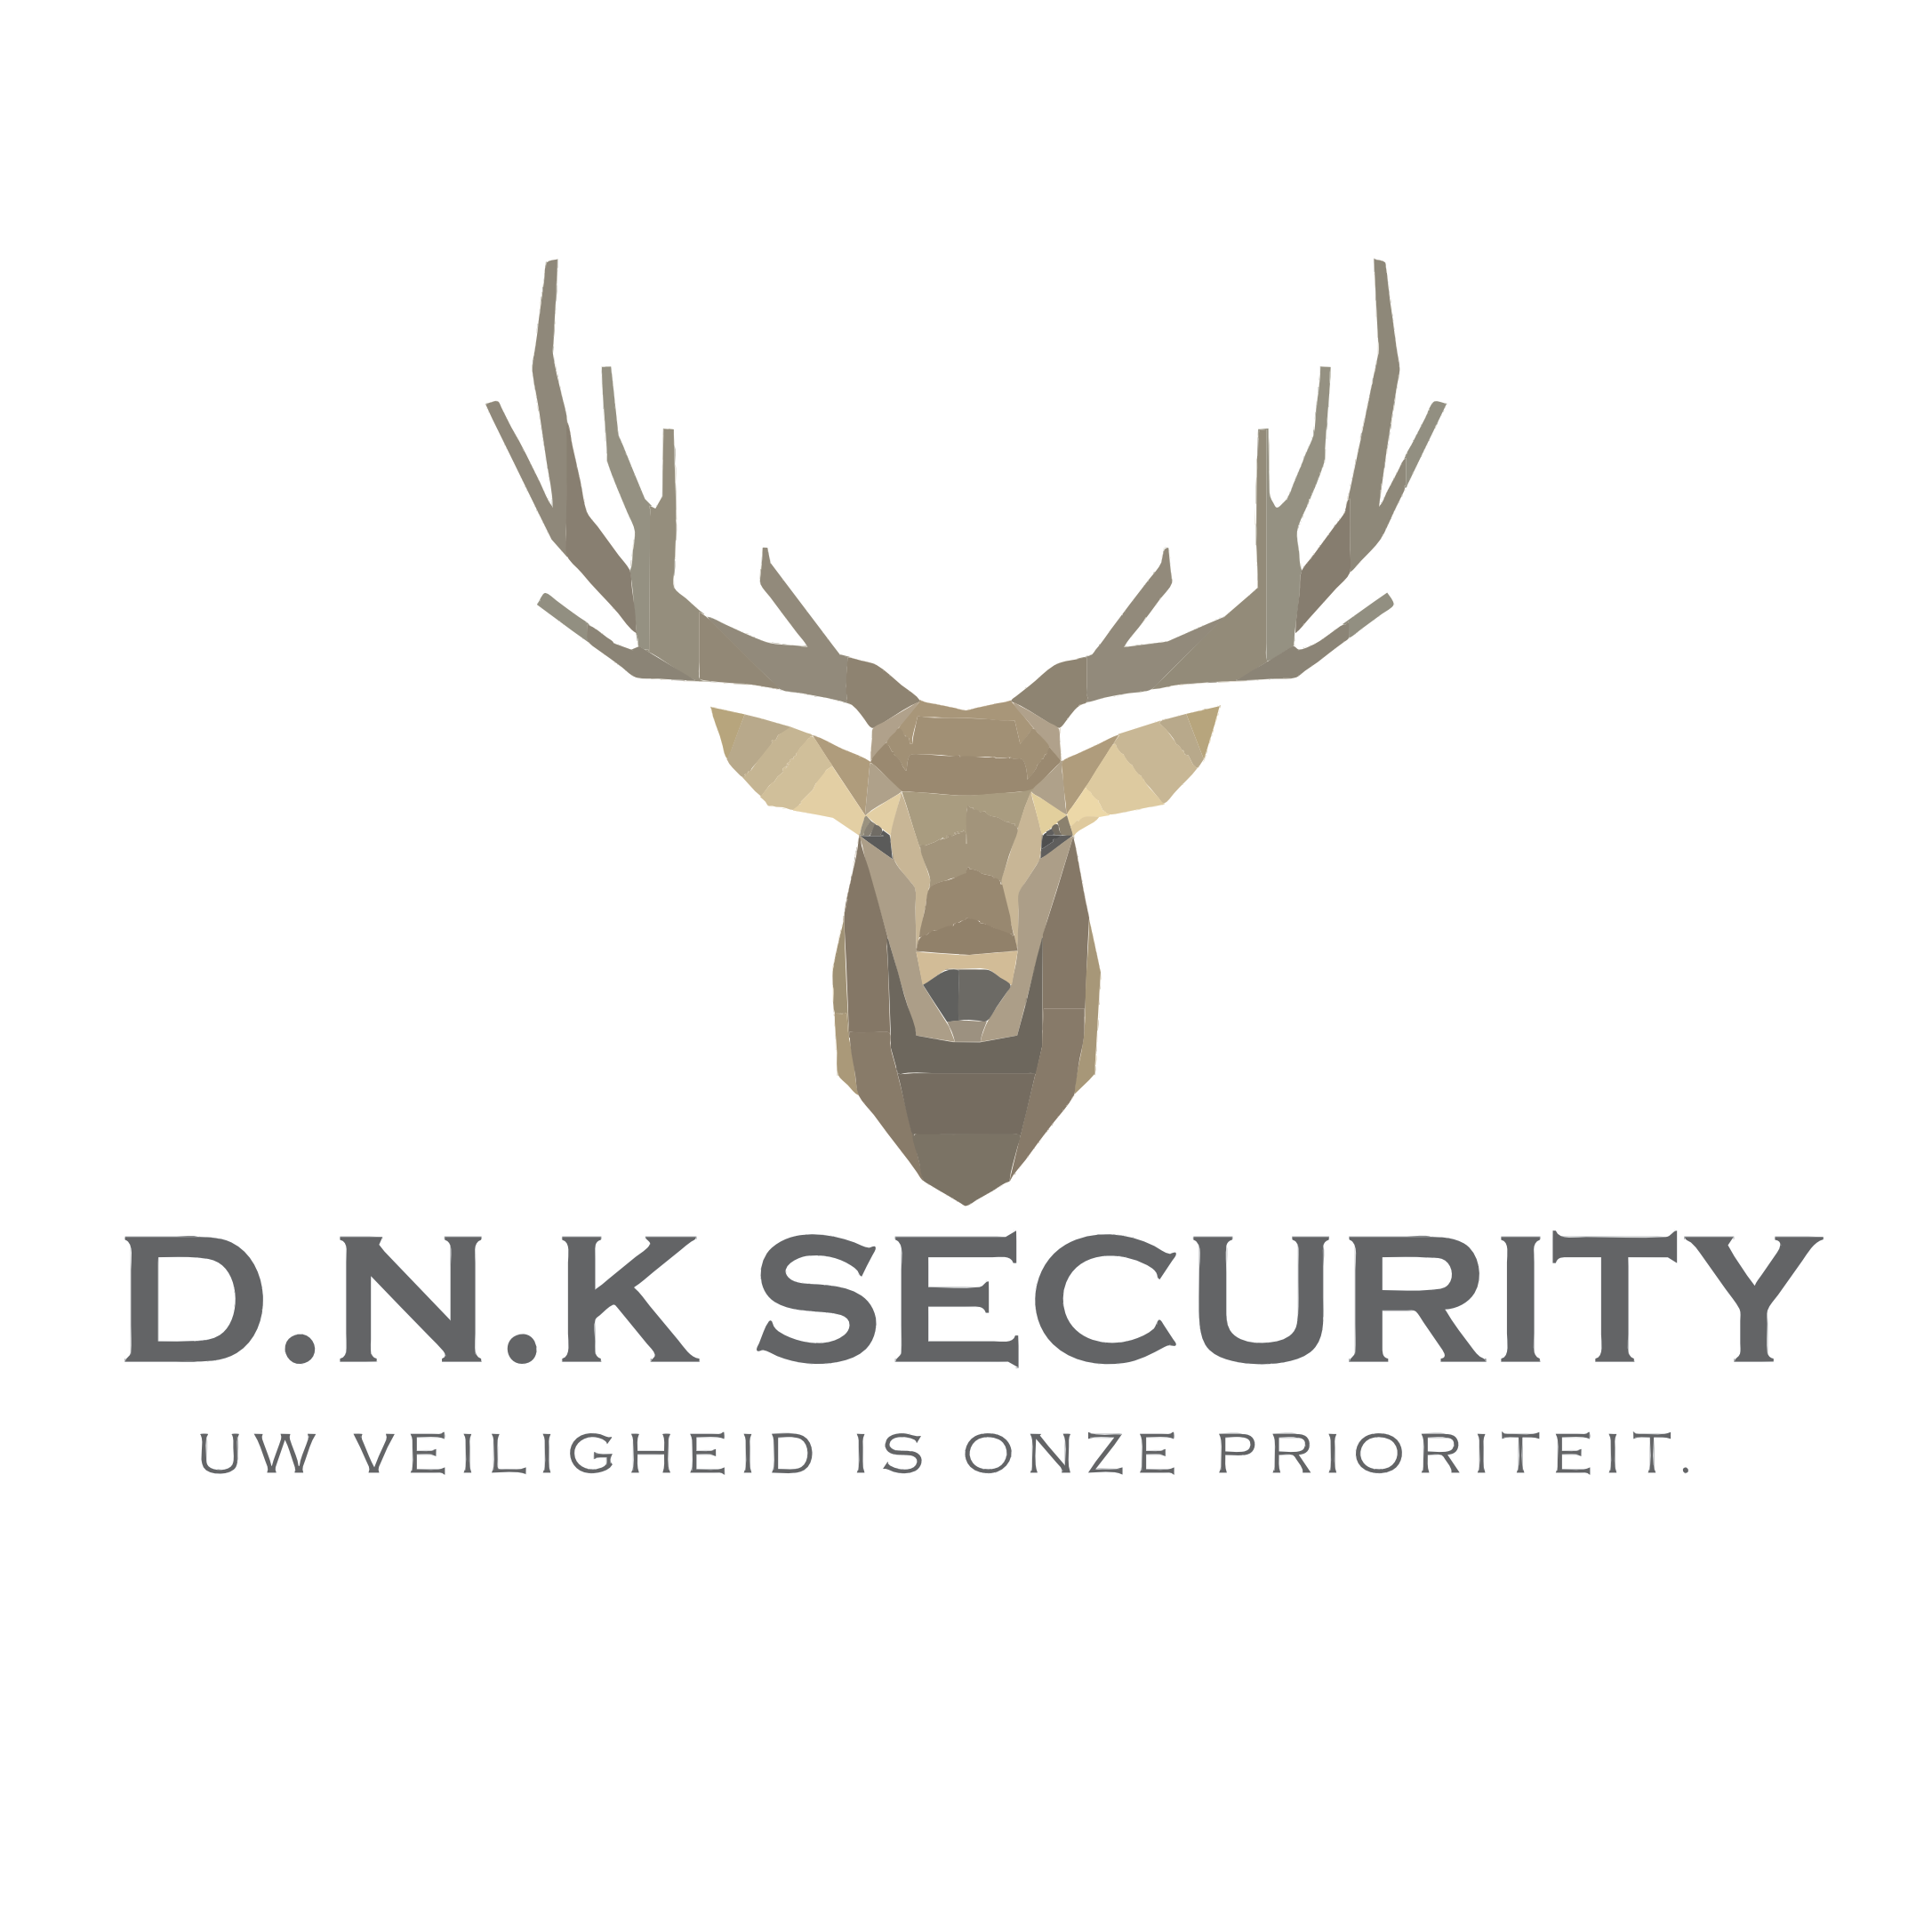 D.N.K Security